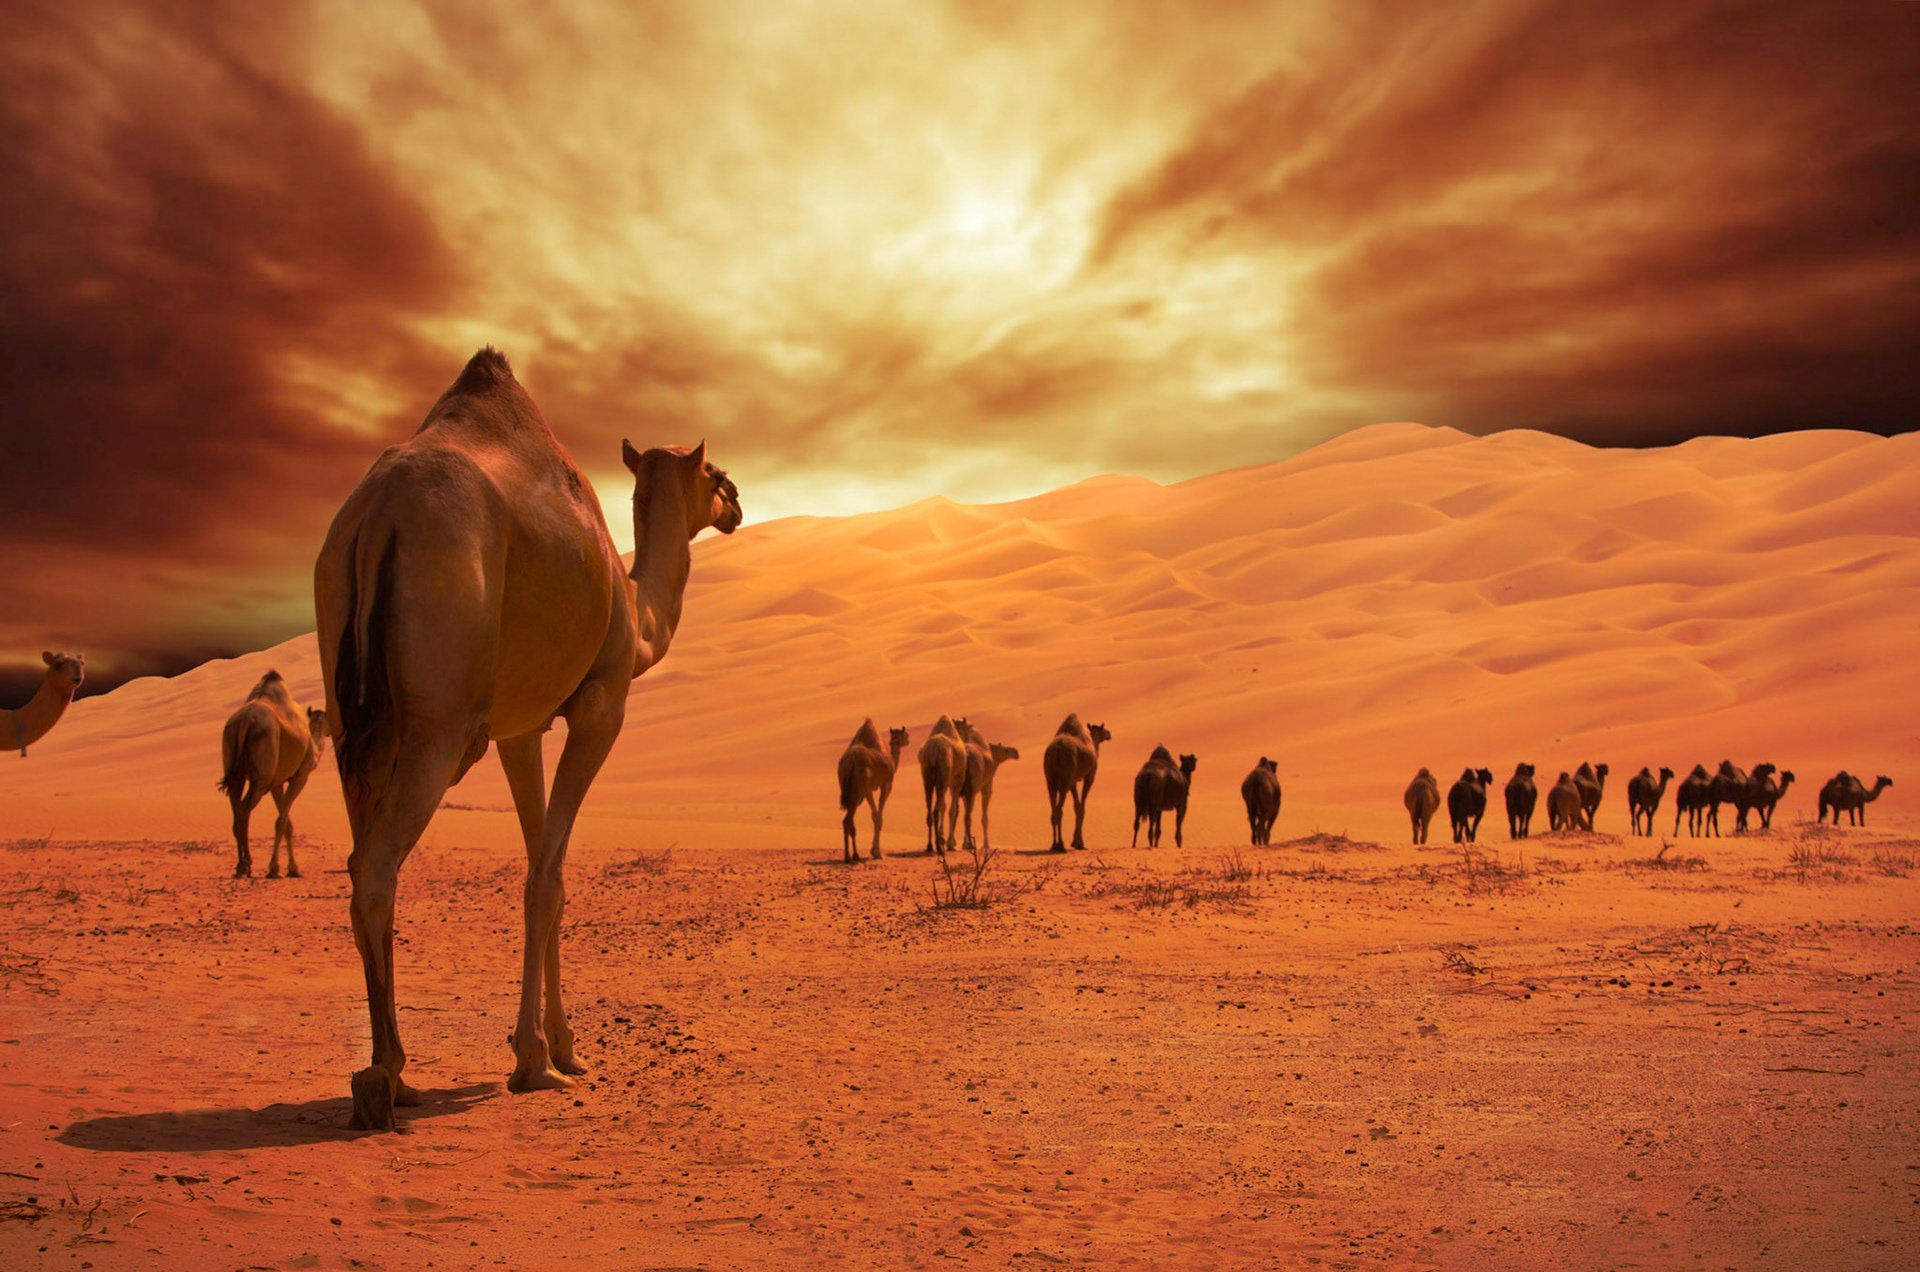 Караван пришел. Караван бактрианов. Абу Даби верблюд. Караван с верблюдами в пустыне. Пустыня Тенере.